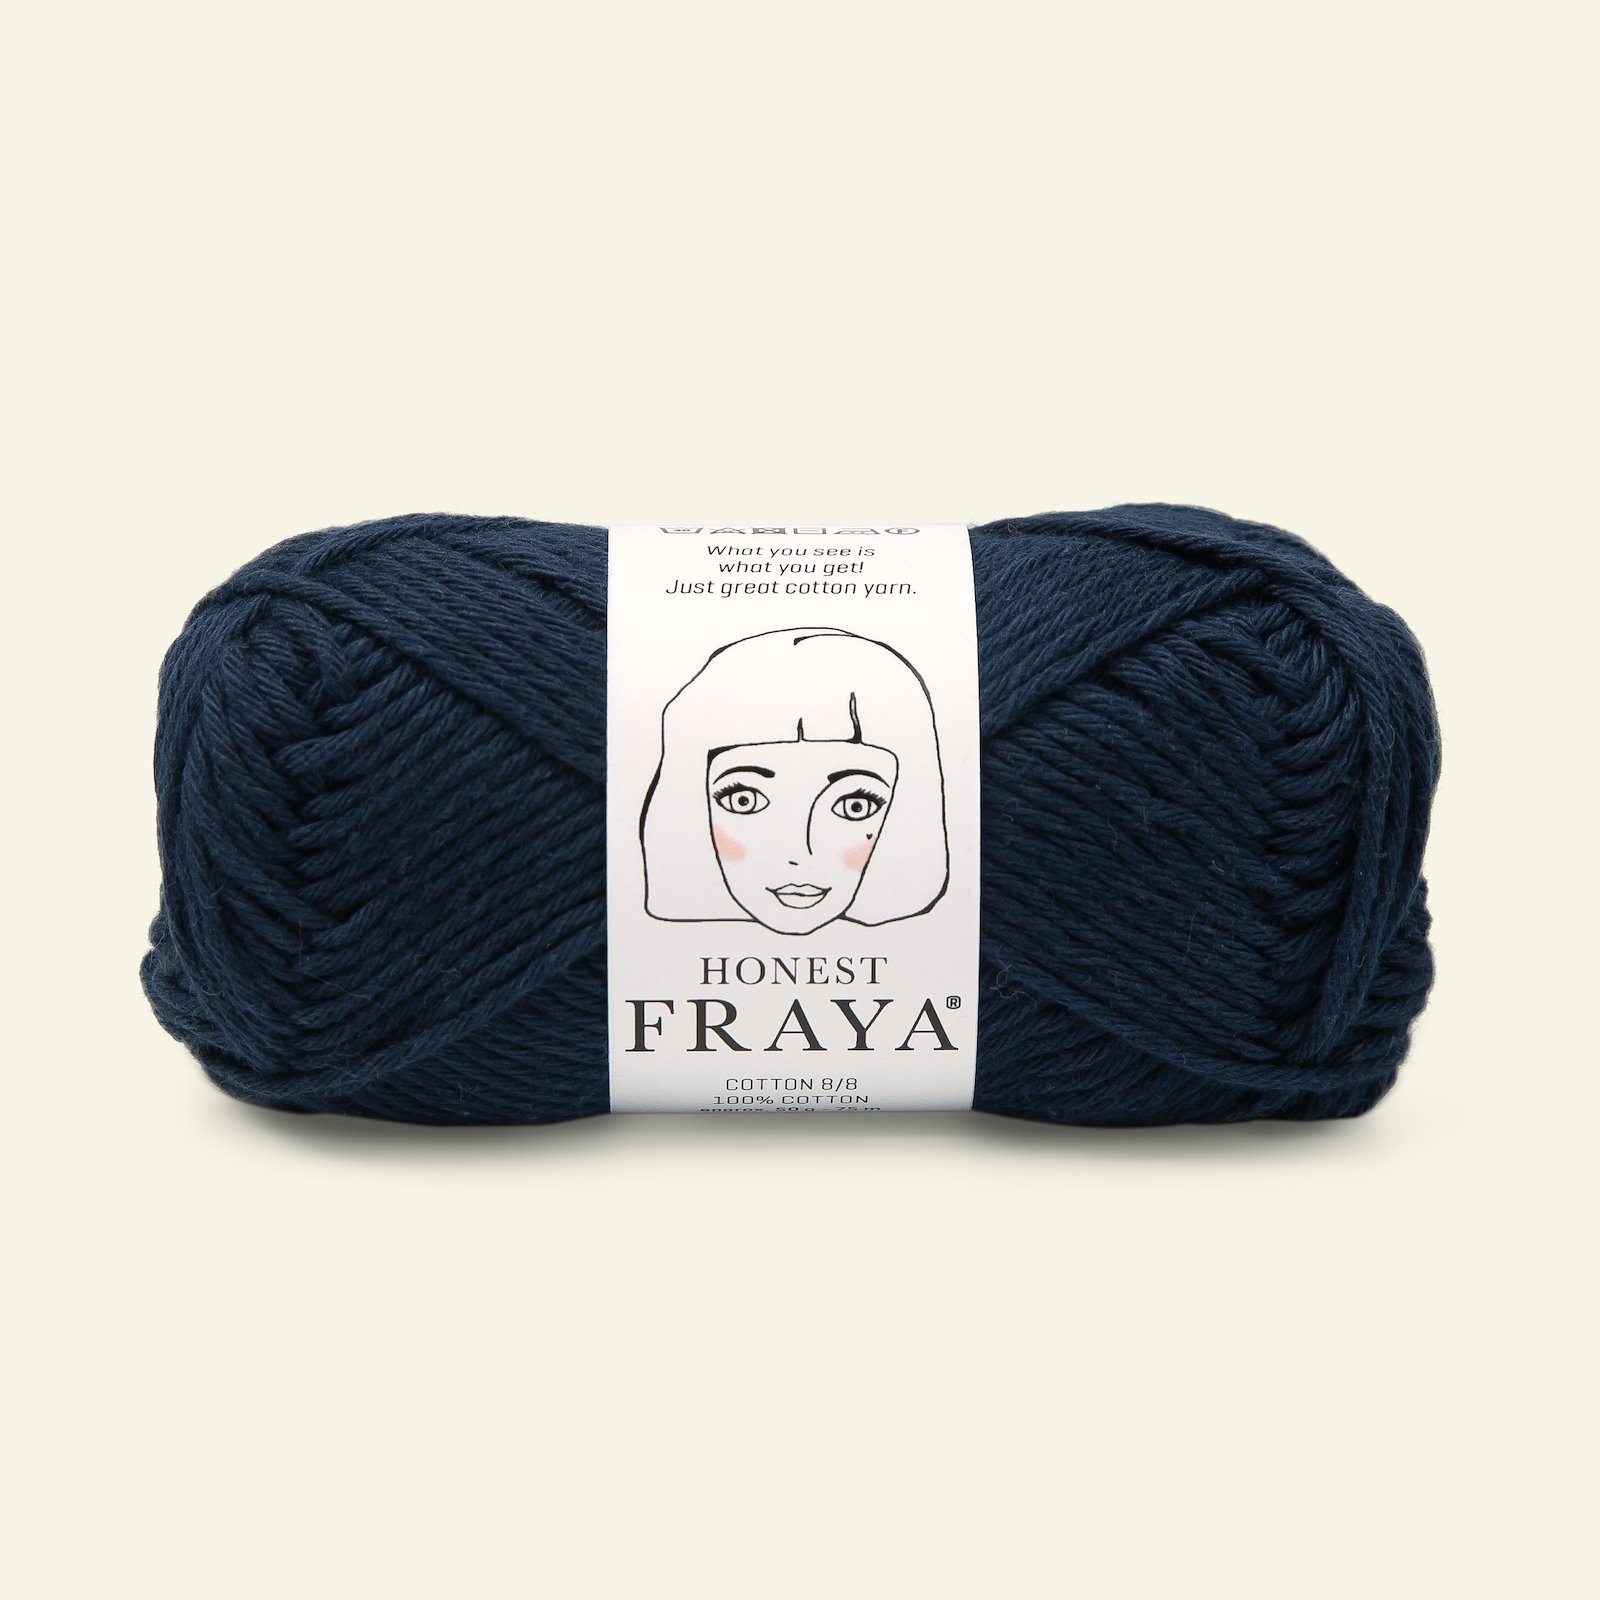 FRAYA, 100% cotton 8/8 yarn "Honest", navy 90061023_pack